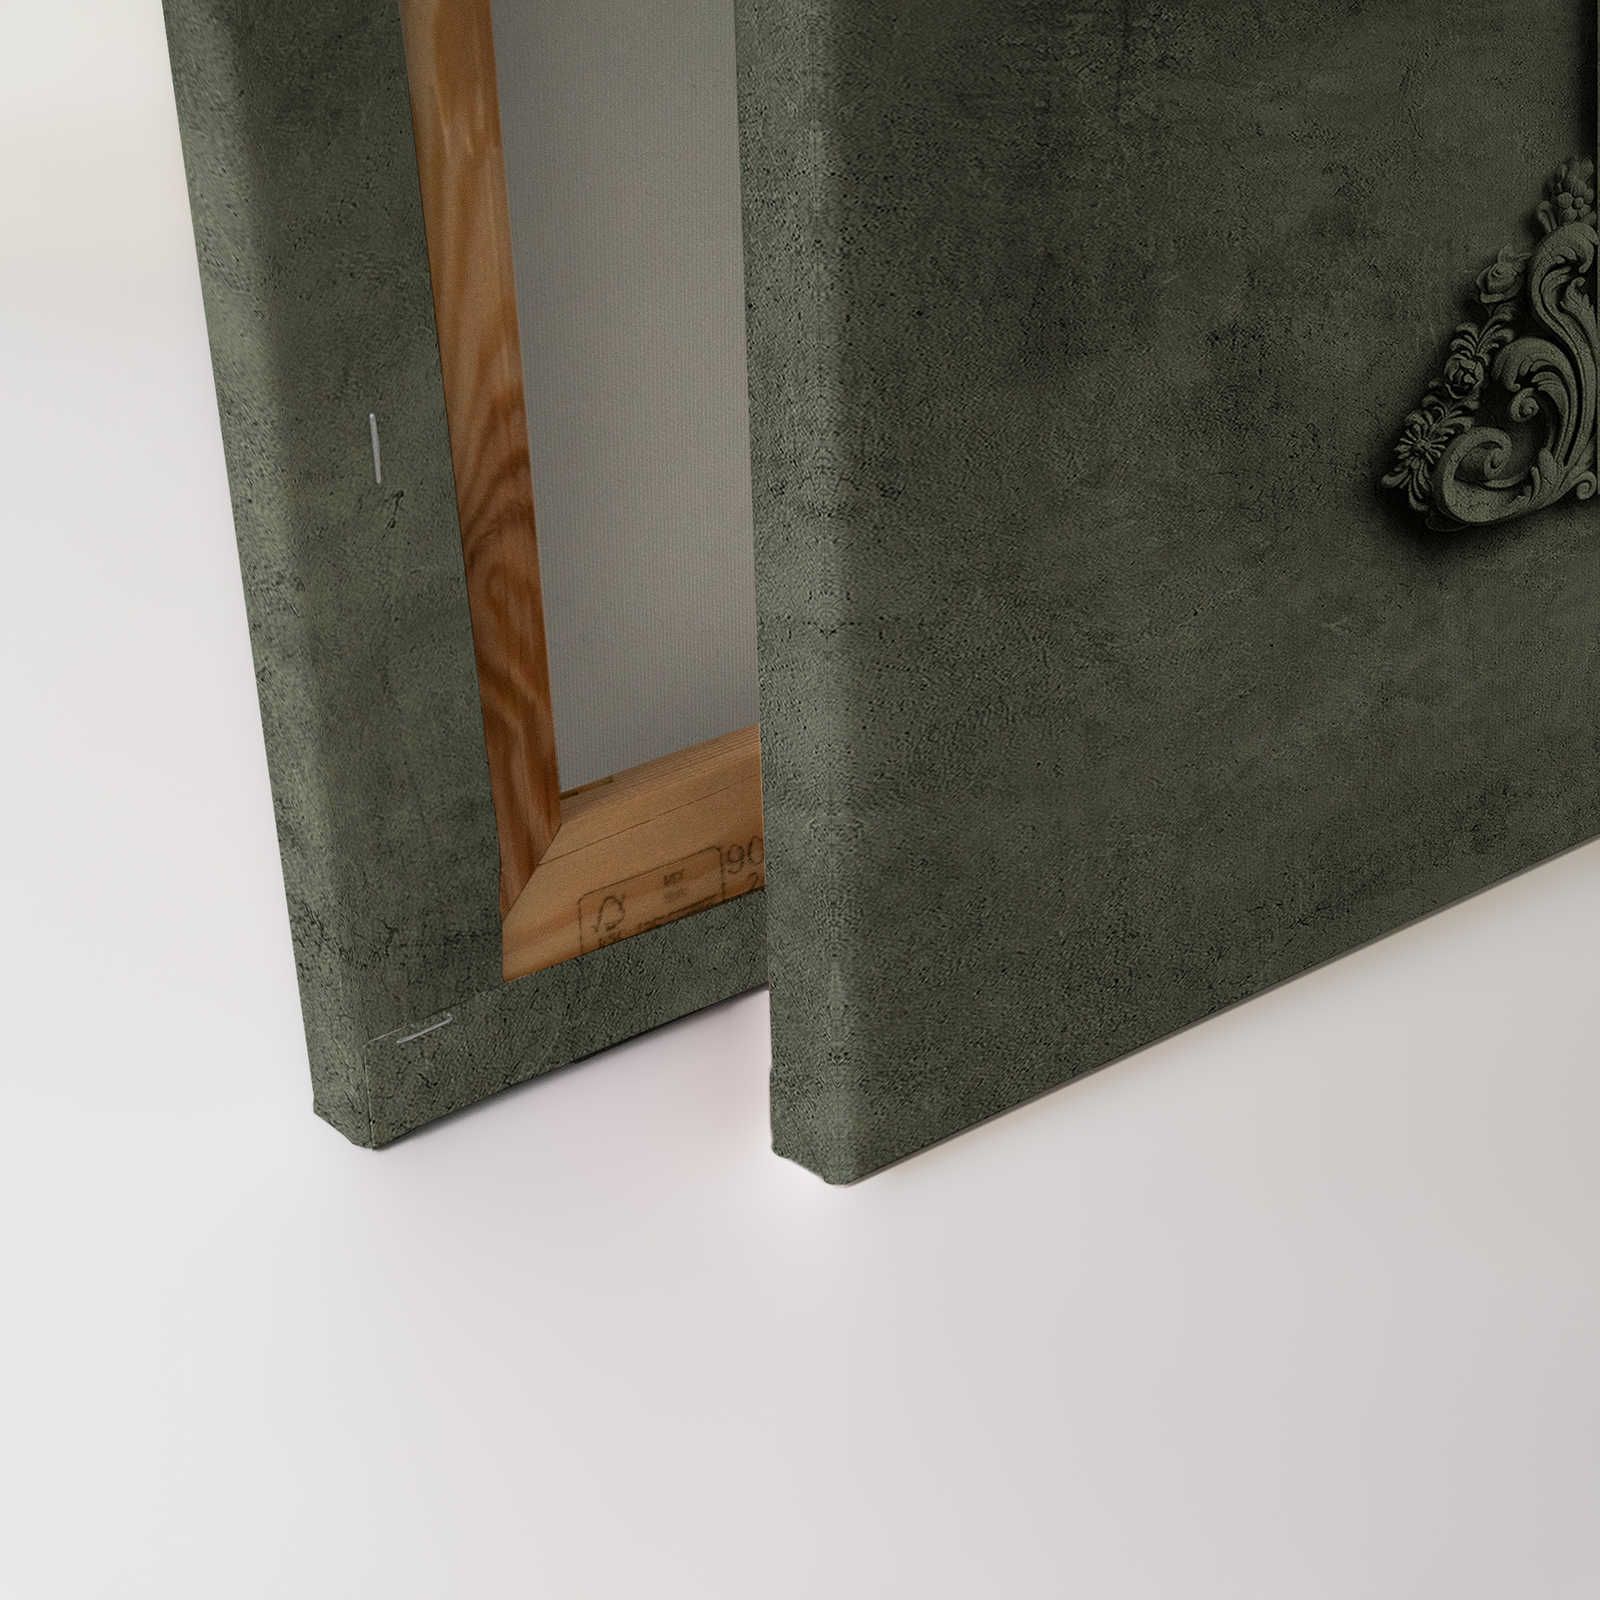             Lyon 2 - Toile 3D cadre stuc & aspect plâtre vert - 0,90 m x 0,60 m
        